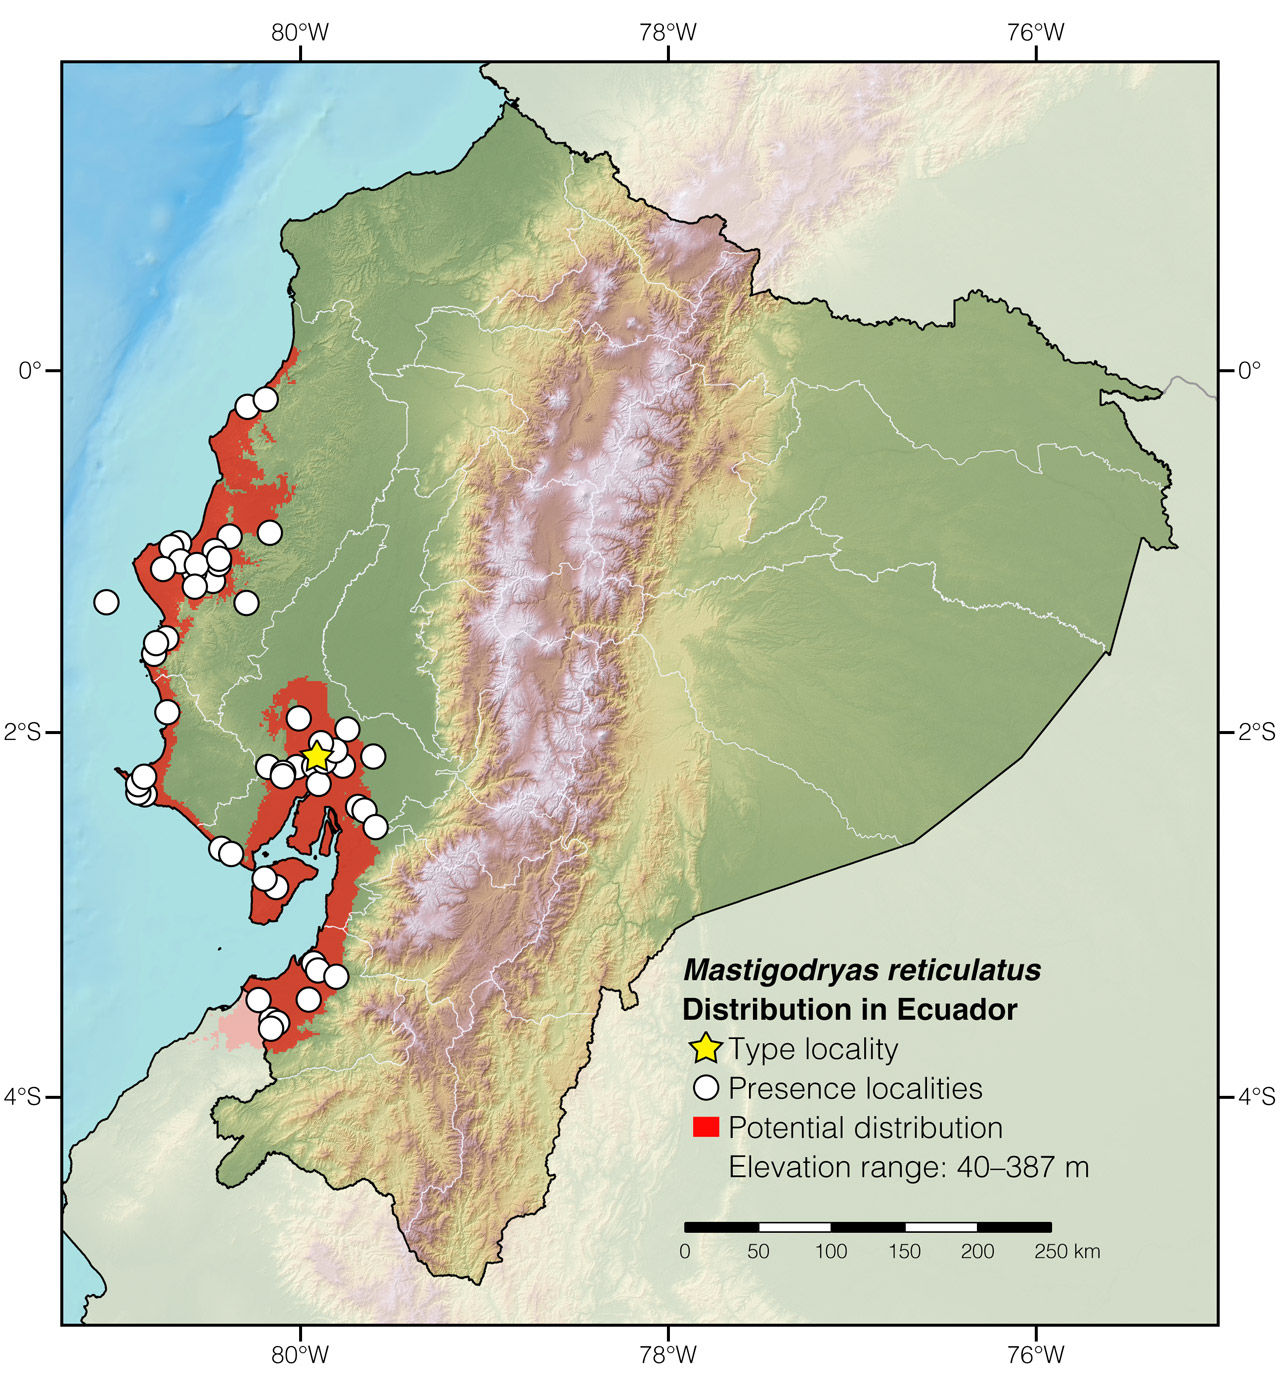 Distribution of Mastigodryas reticulatus in Ecuador